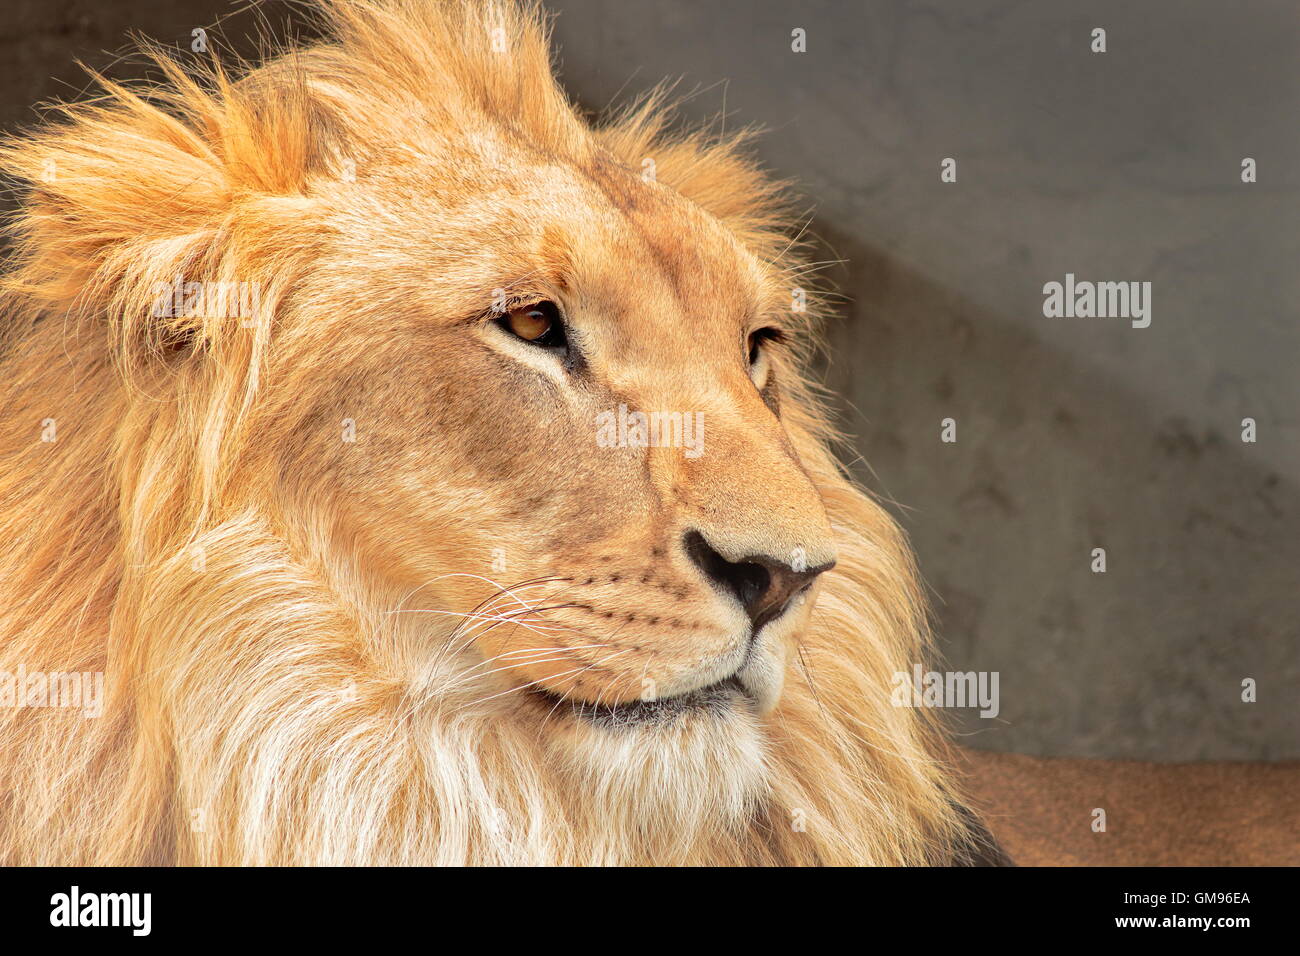 El león (Panthera leo) es un mamífero carnívoro de la familia de los félidos y una de las cinco especies del género Panthera. Stock Photo